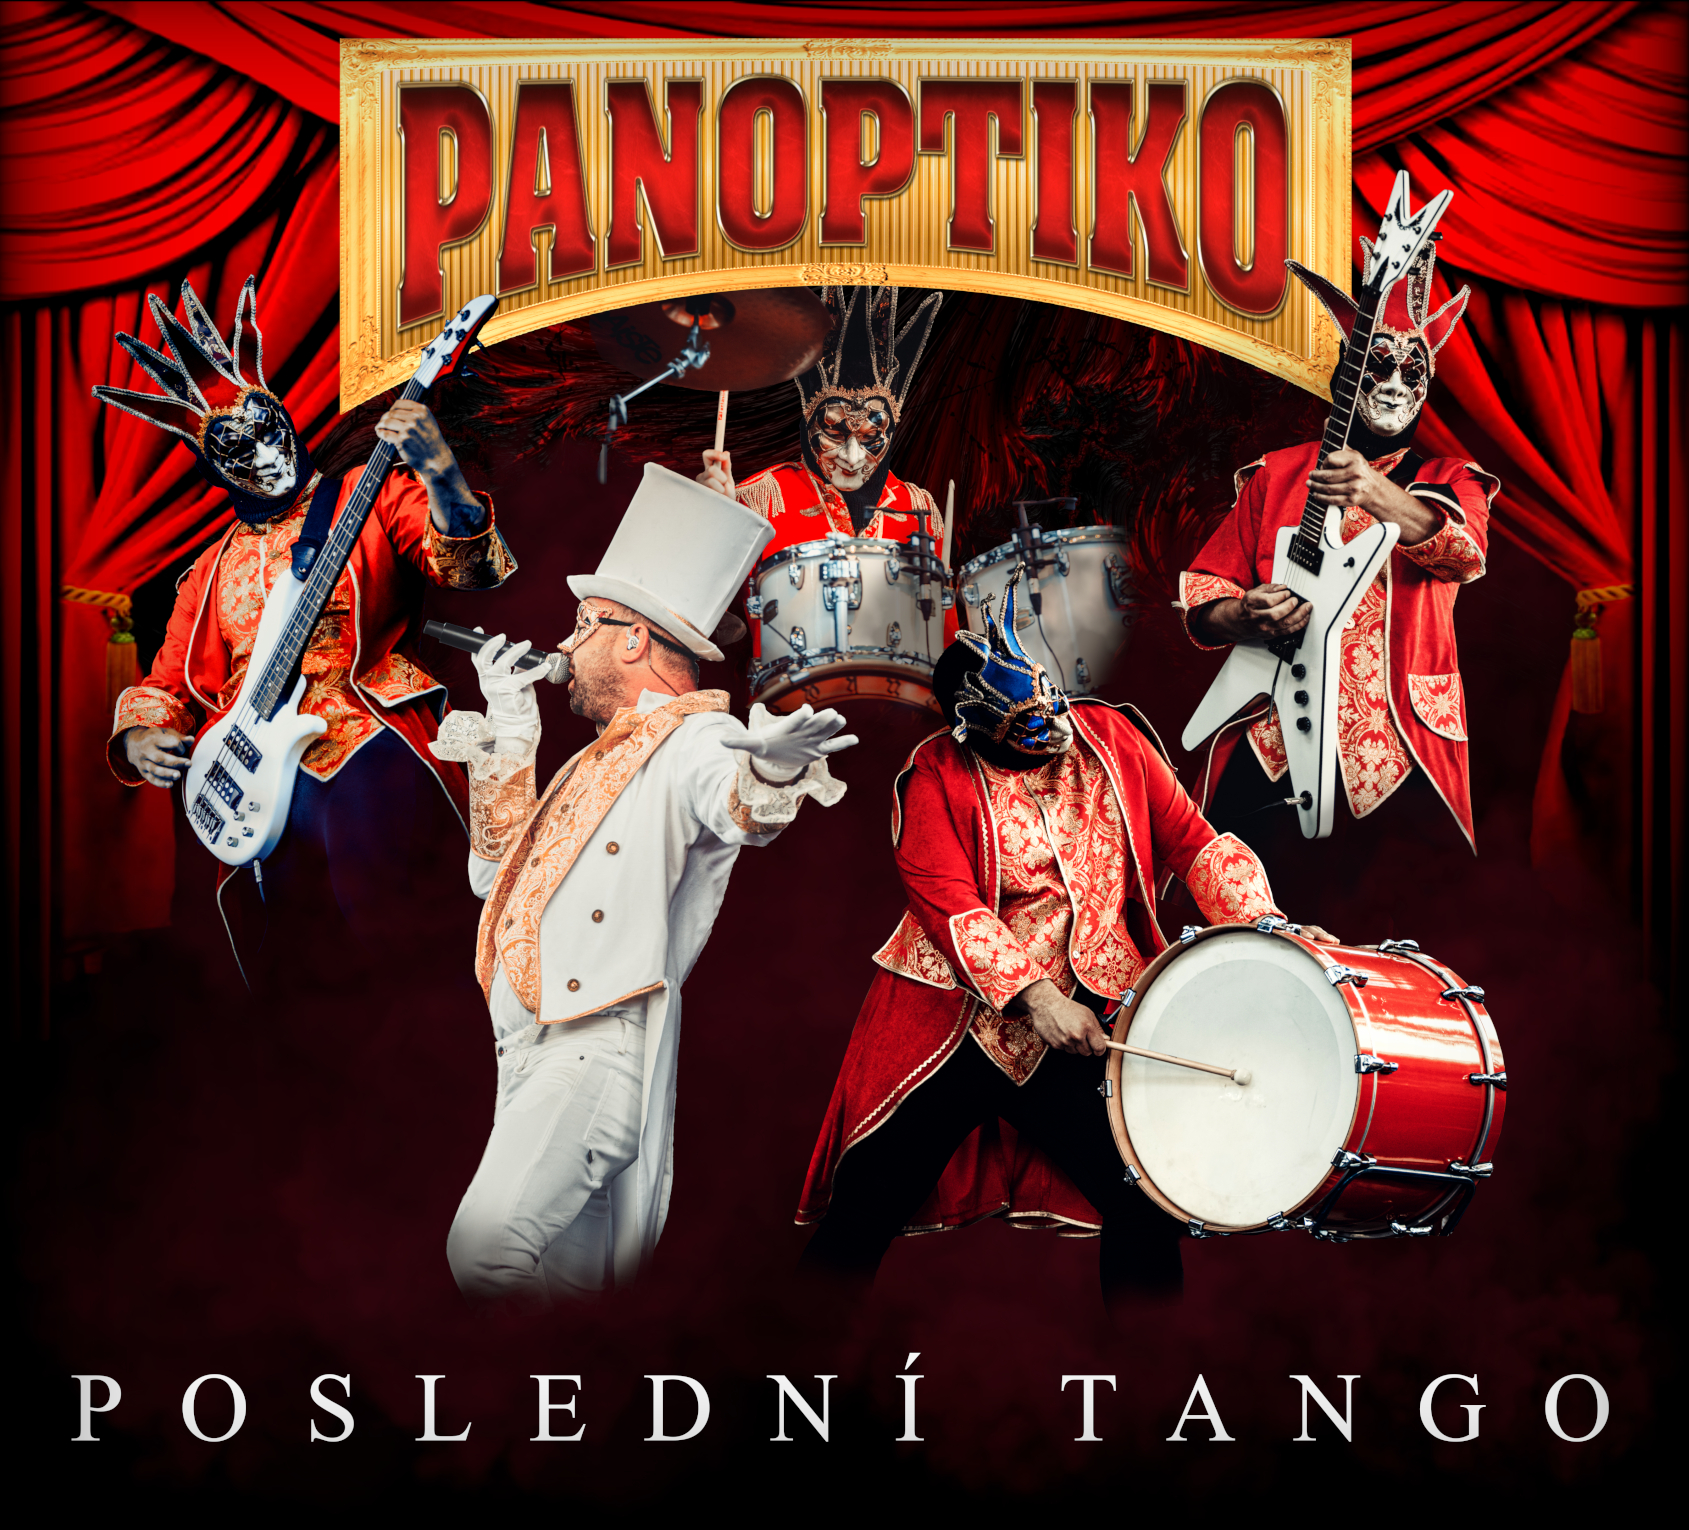 CD PANOPTIKO "POSLEDNÍ TANGO"